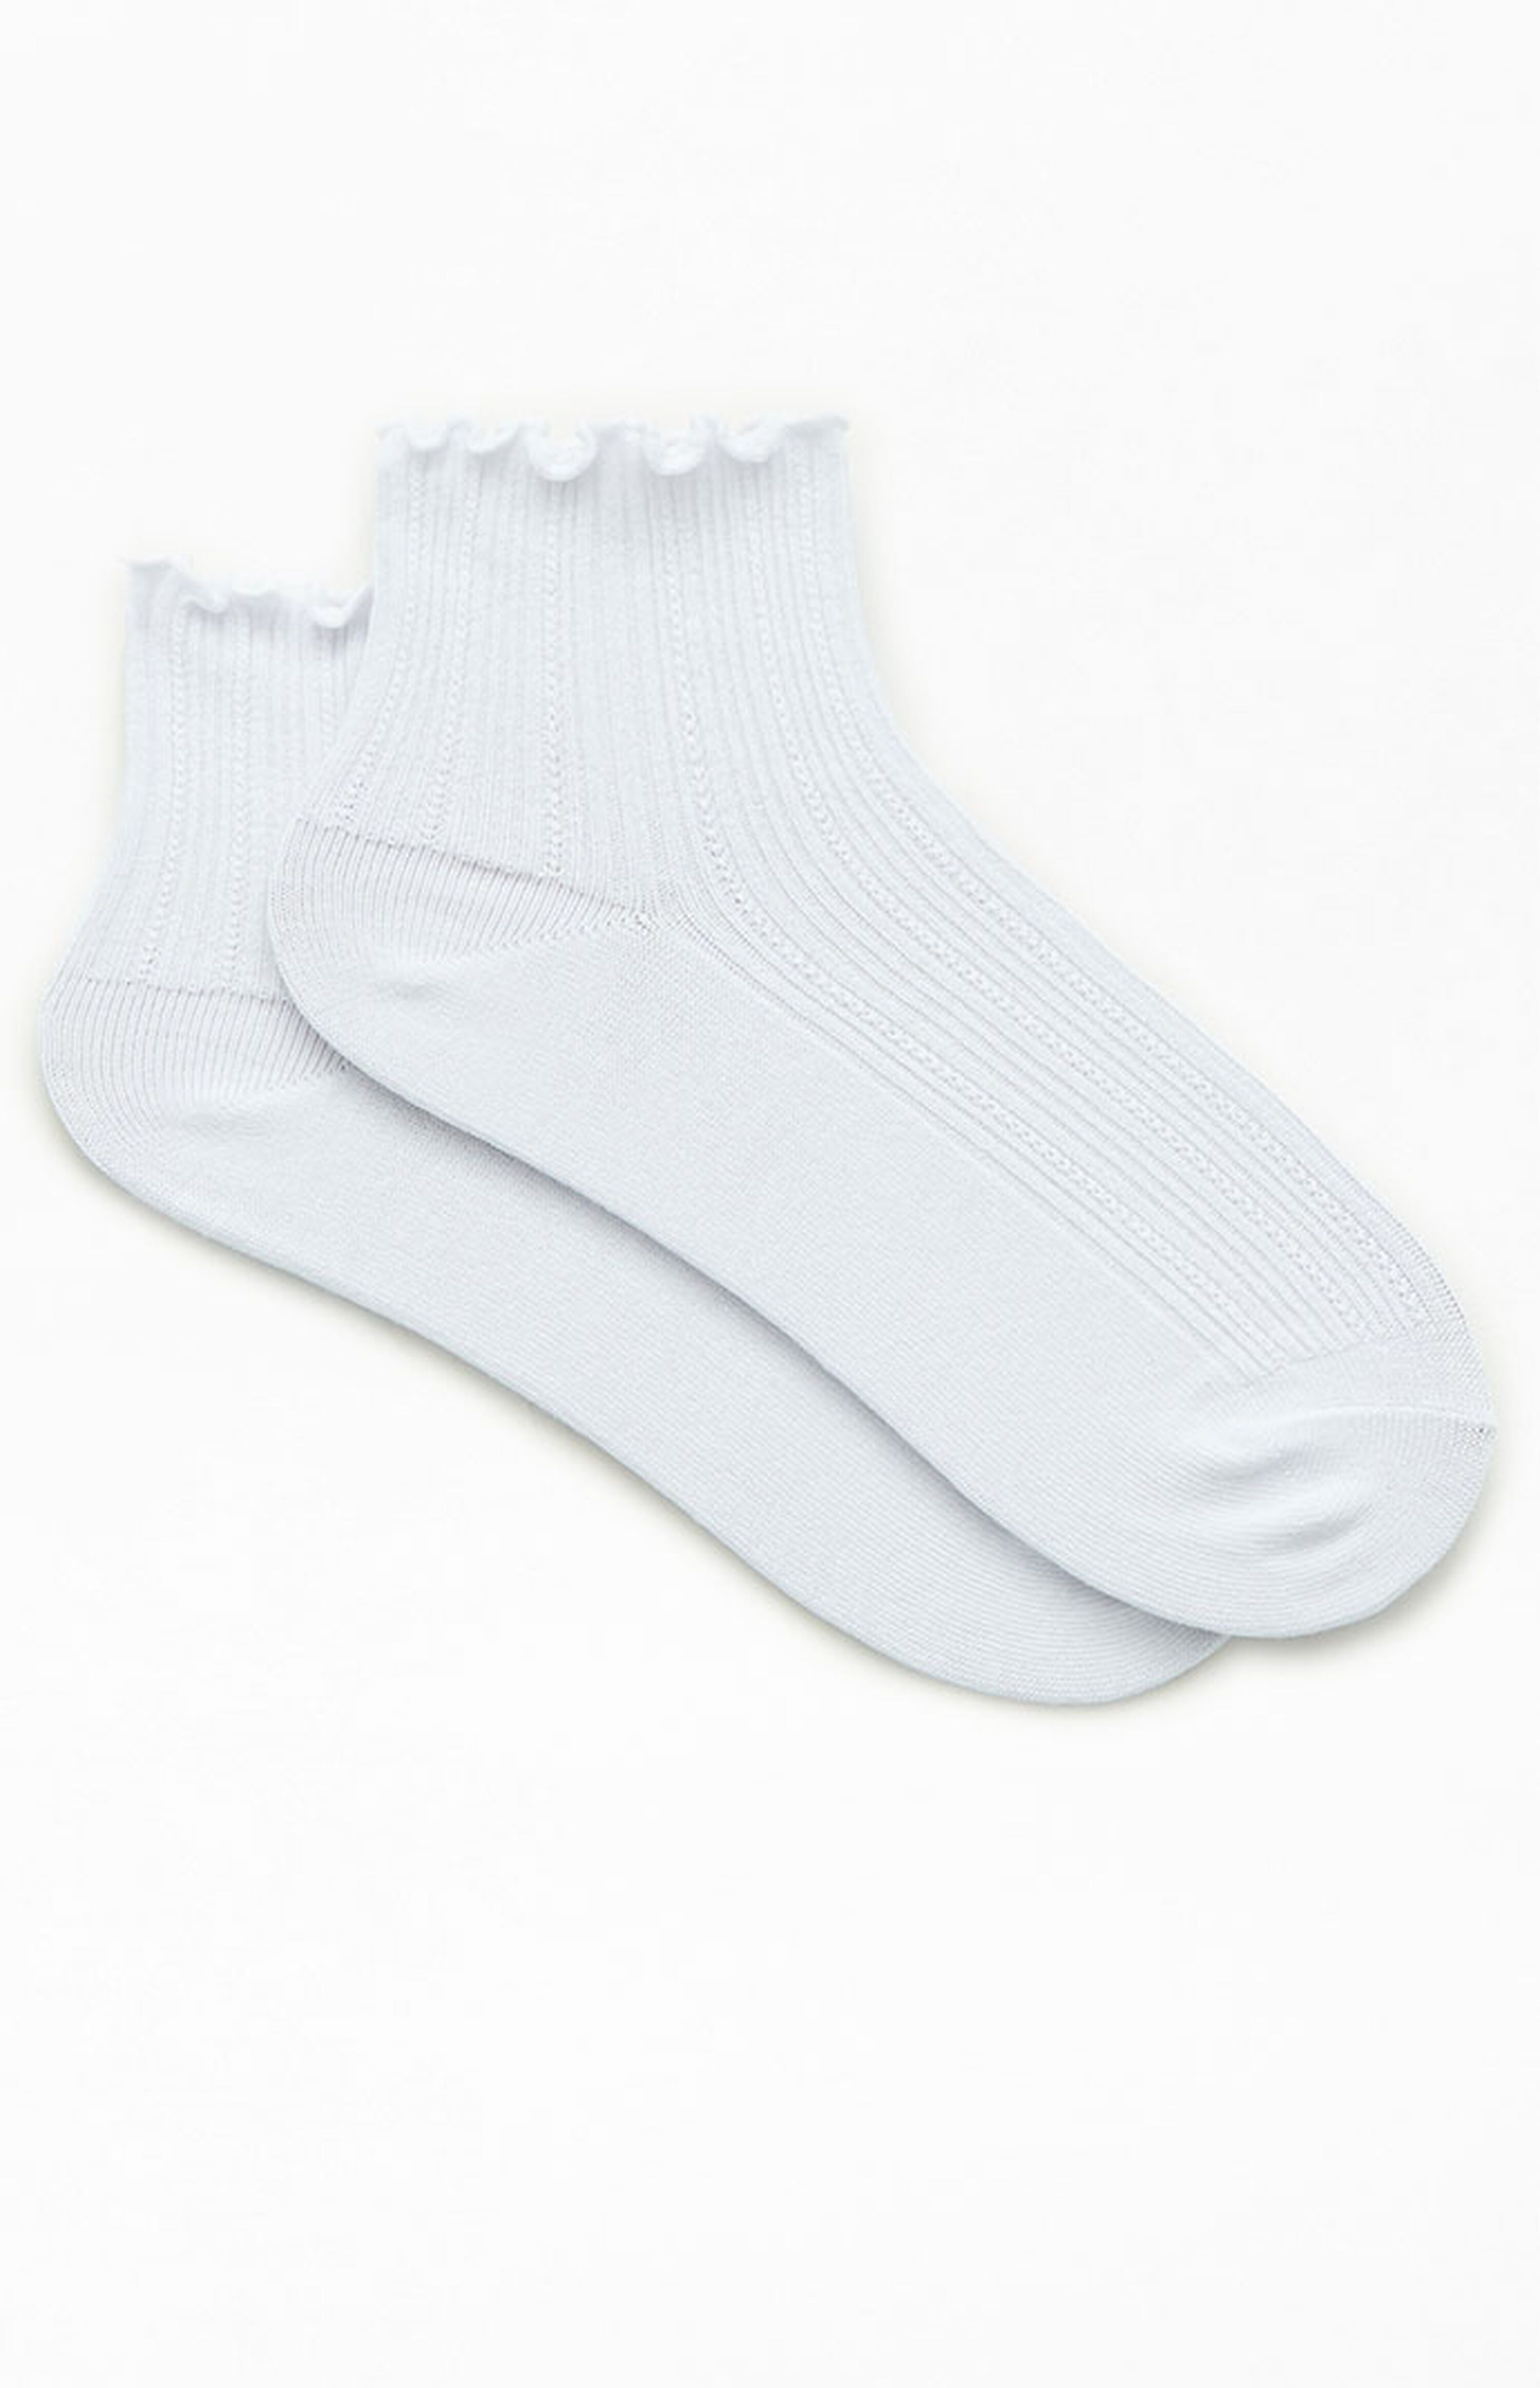 John Galt White Ruffle Ankle Socks | PacSun